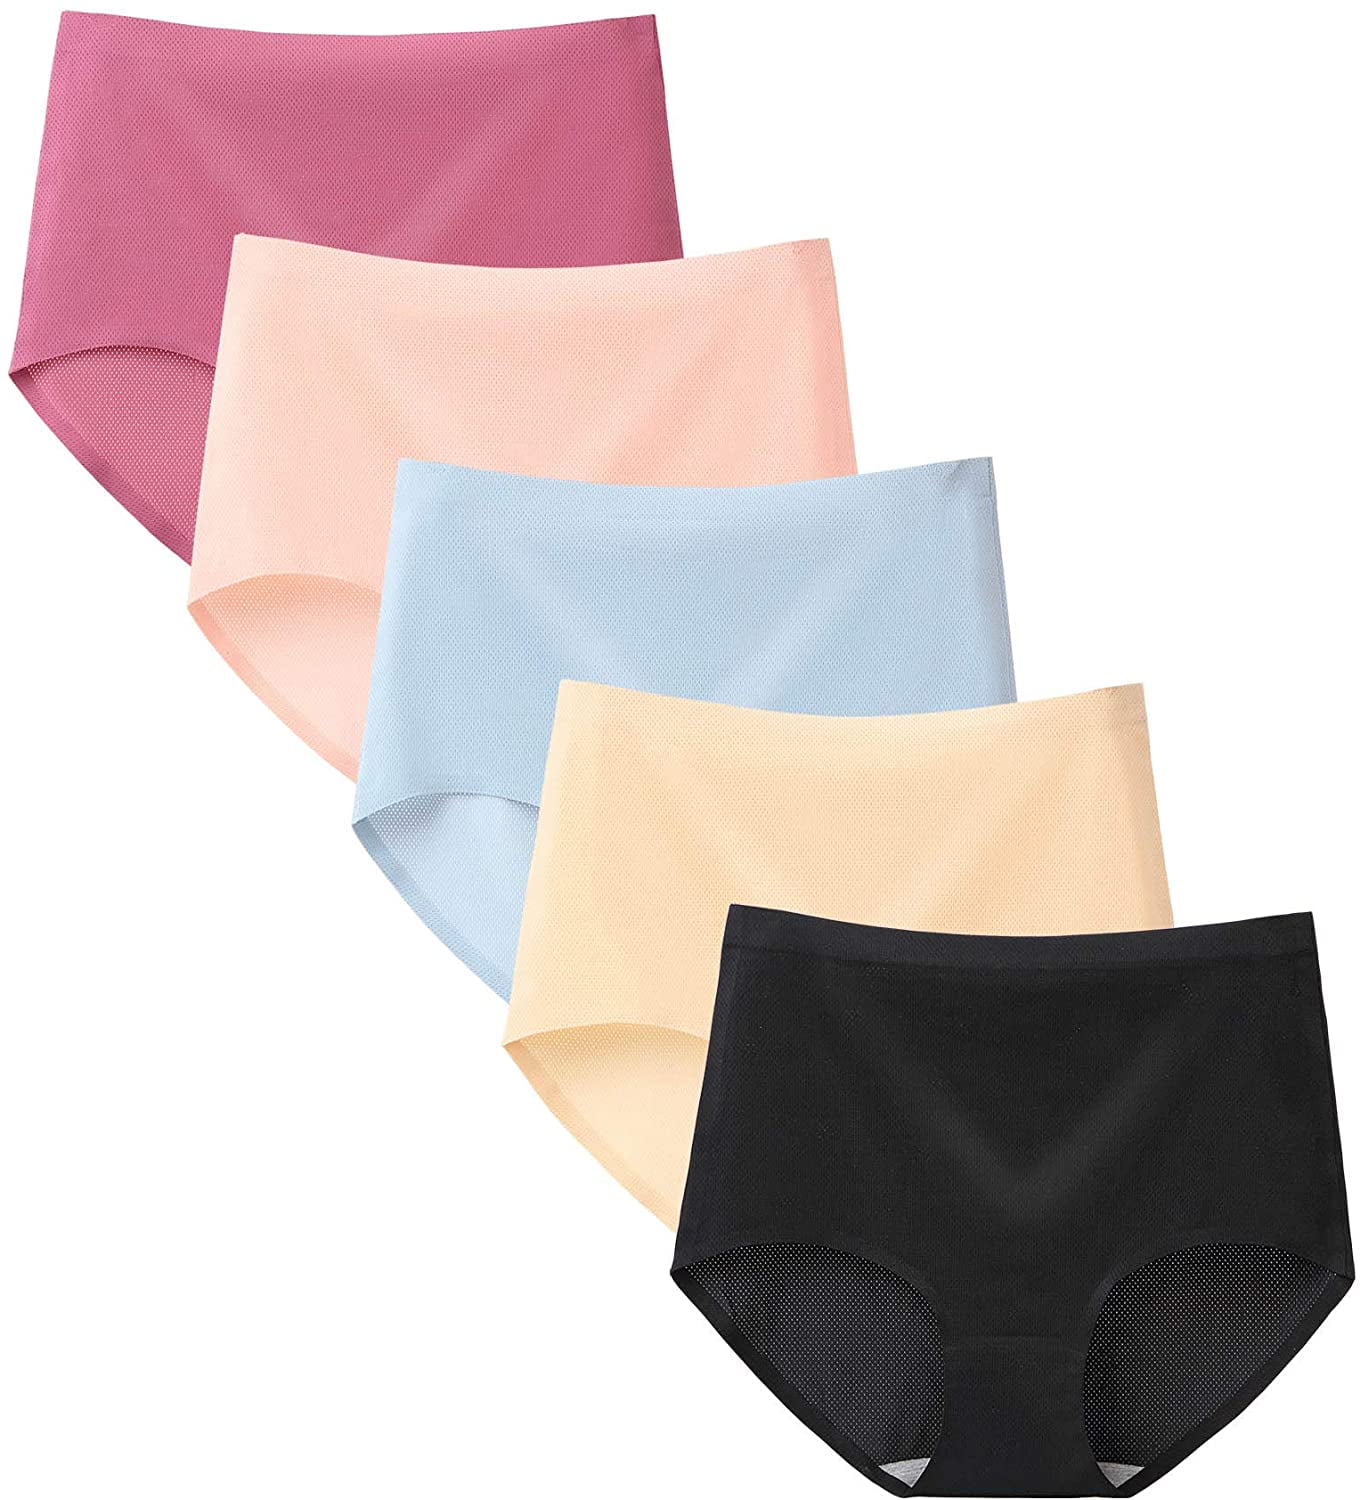 Women's Underwear High Waist Ice Silk Seamless Breathable Briefs ...